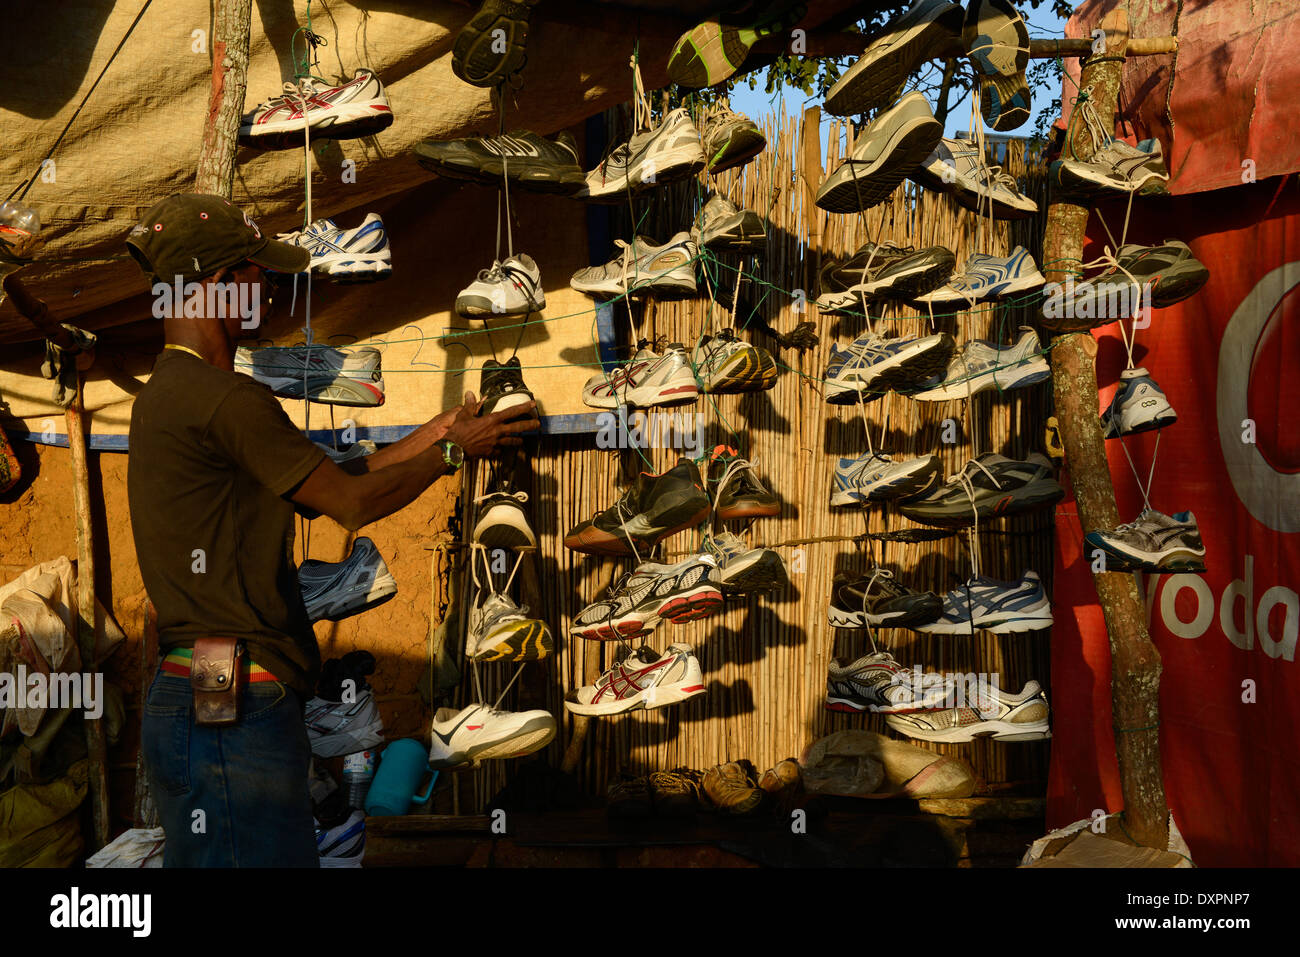 TANZANIA Geita, artigianale miniere d'oro in Mgusu, dove circa 4000 persone vivono e lavorano, principale strada con i negozi, bar e mercato, venditore ambulante vende calzature sportive Foto Stock